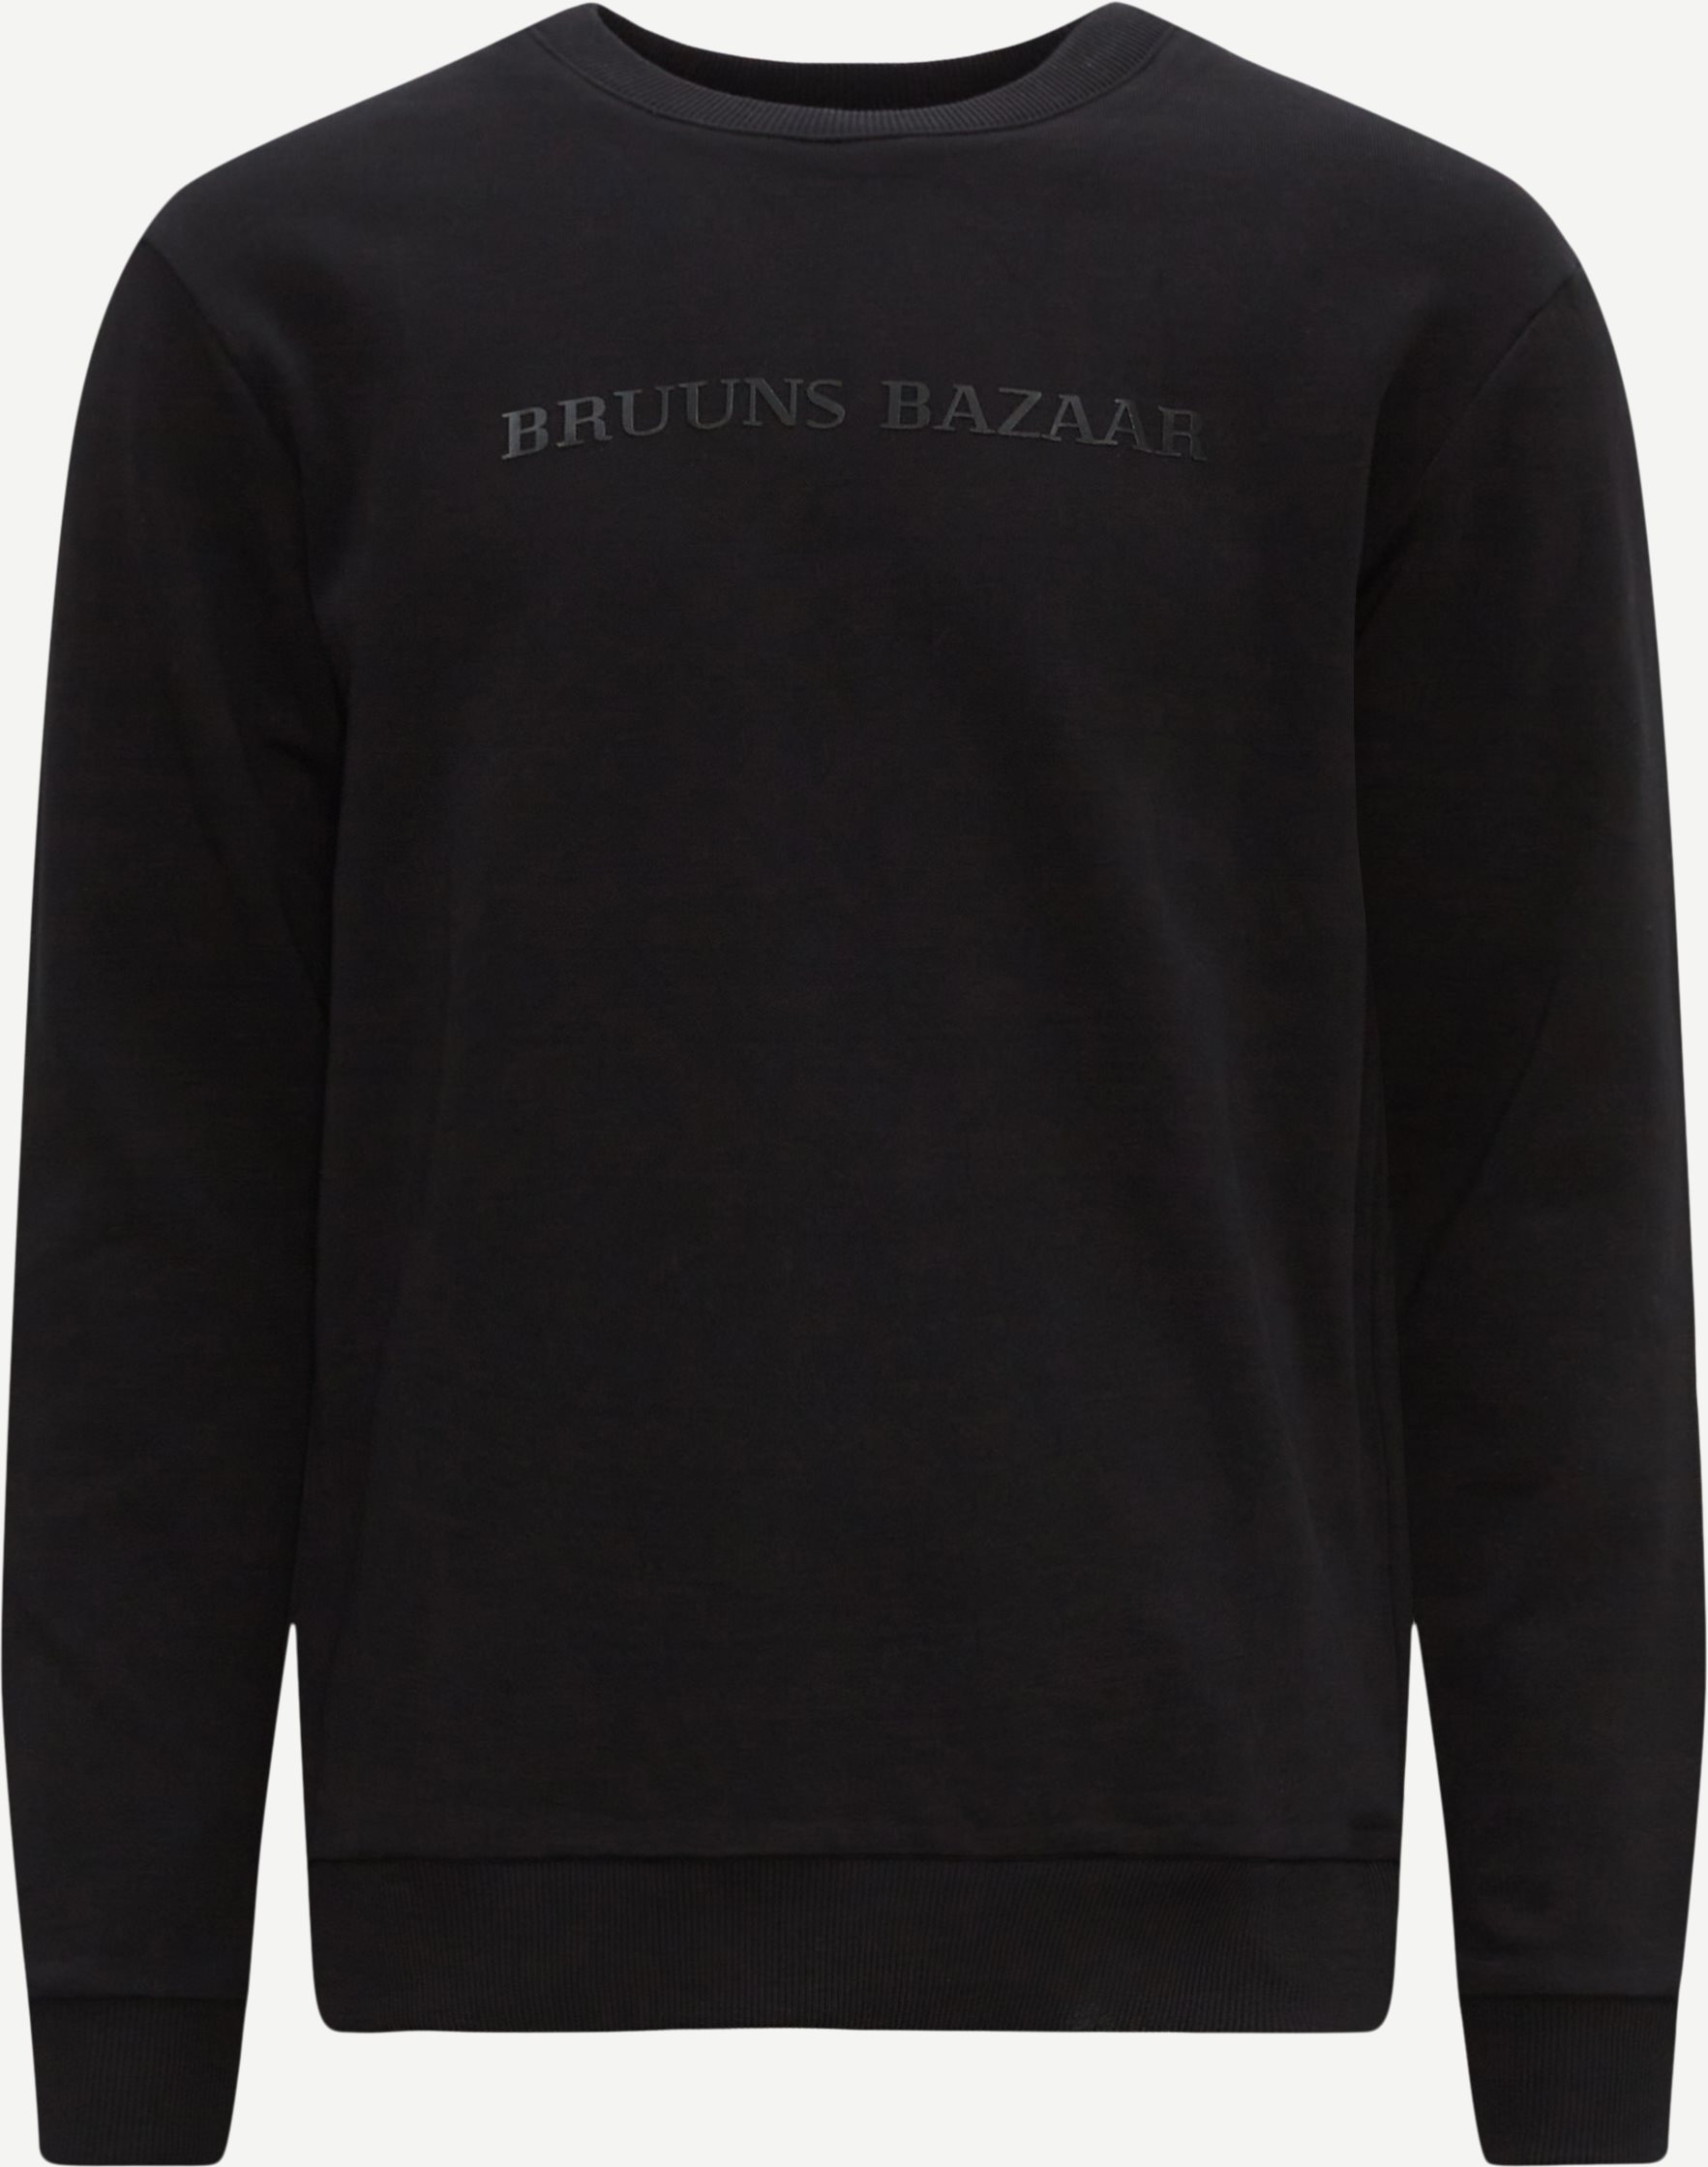 Bruuns Bazaar Sweatshirts BIRK CREW NECK BBM1279 Black